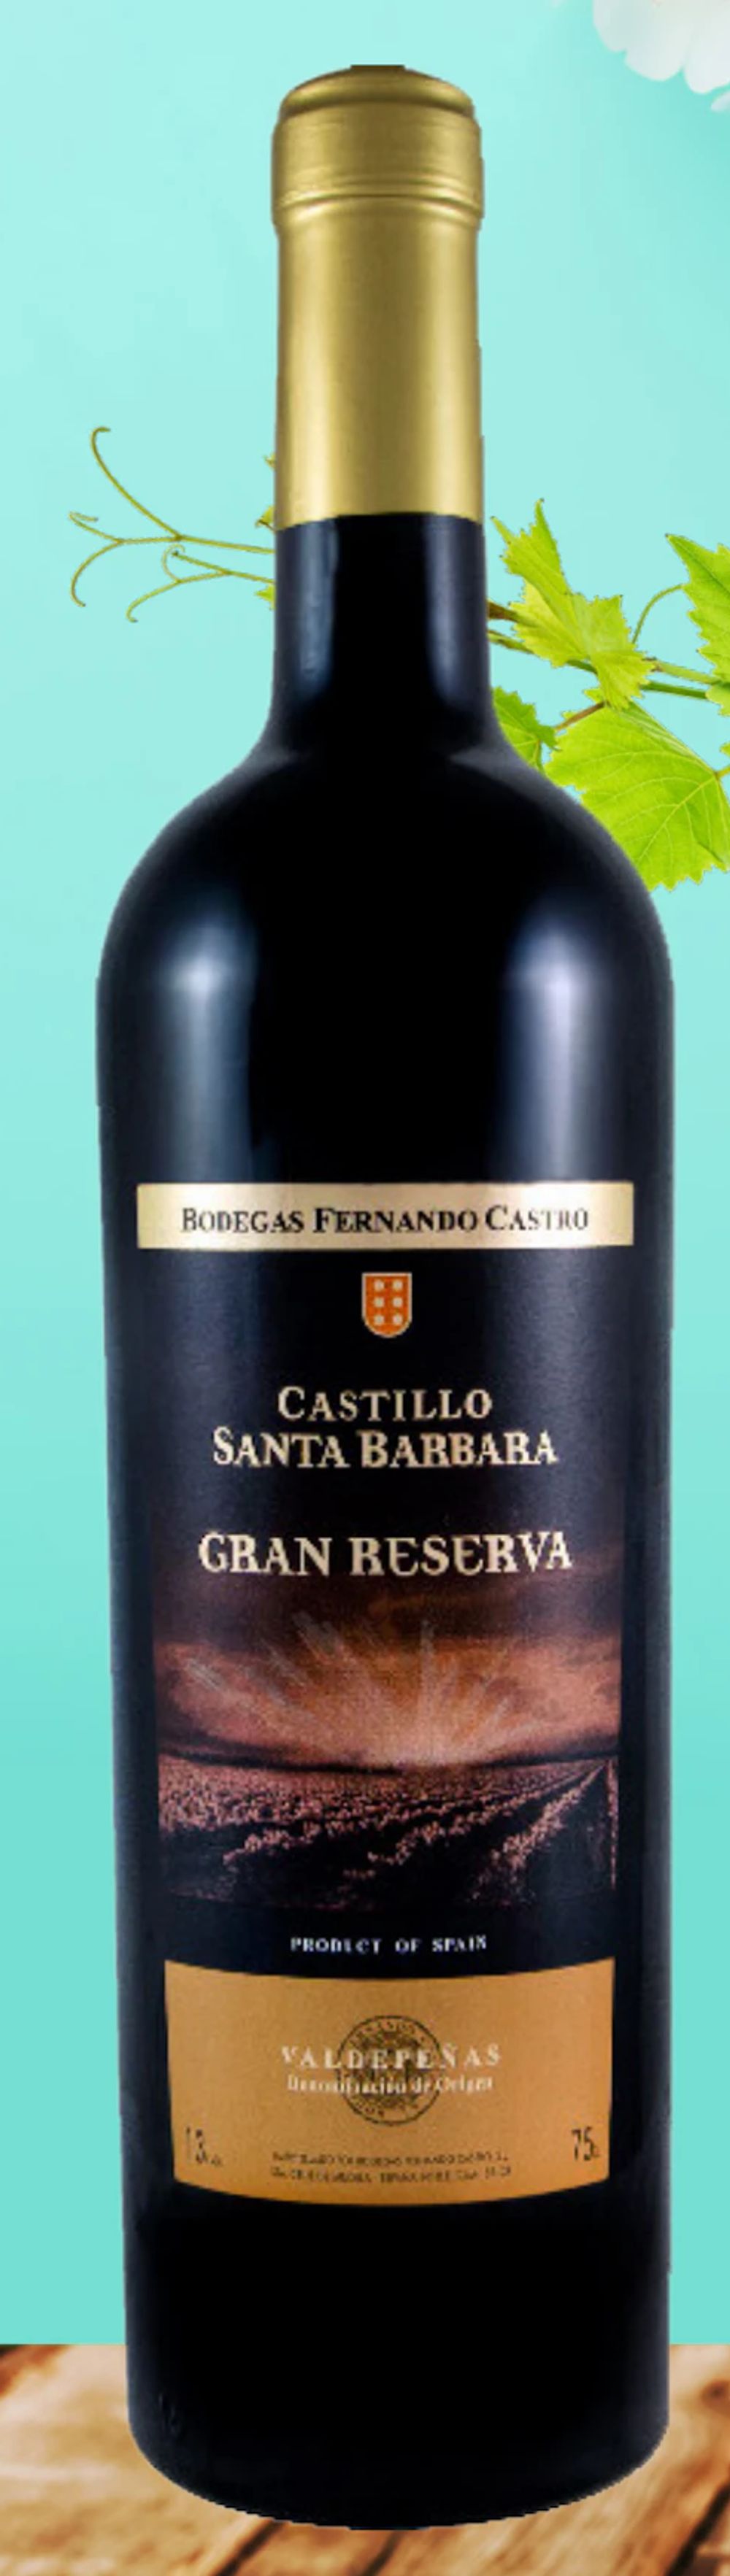 Tilbud på Castillo Santa Barbara fra Købmandsgården til 24,95 kr.